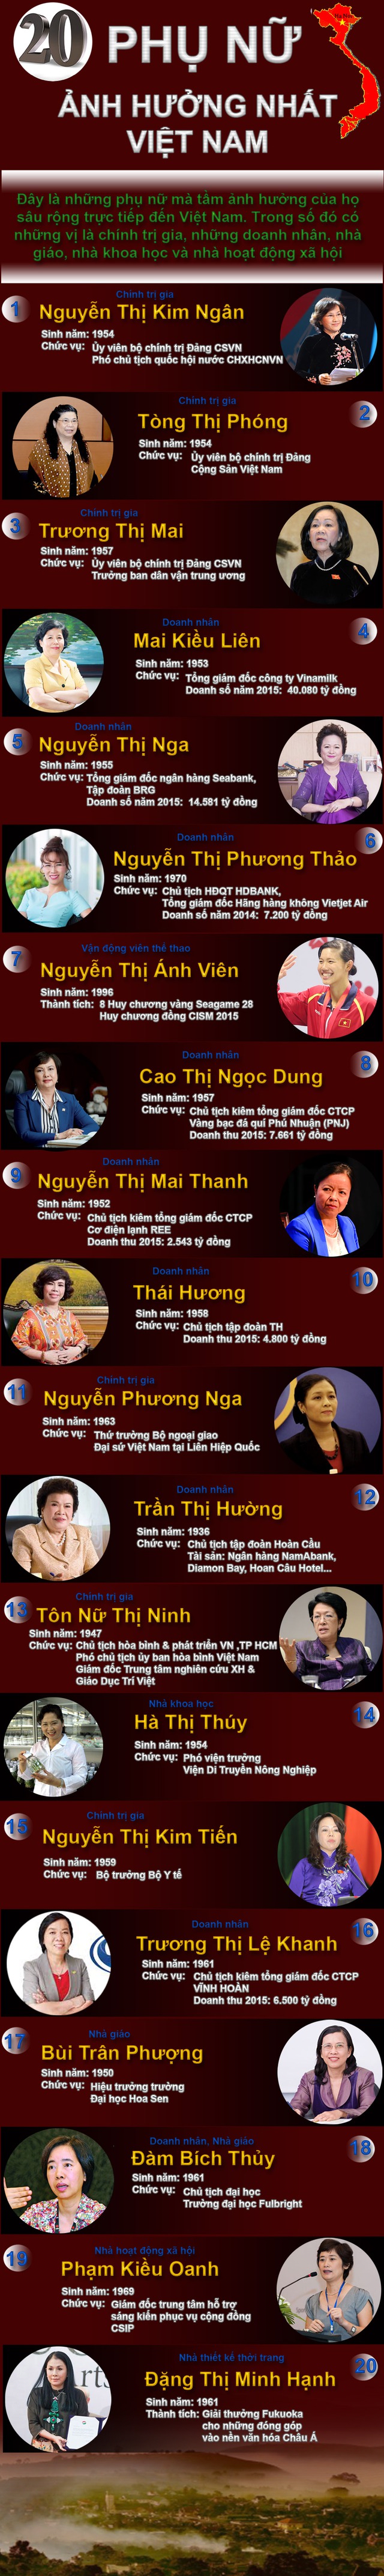 
Danh sách Forbes 20 phụ nữ ảnh hưởng nhất Việt Nam
